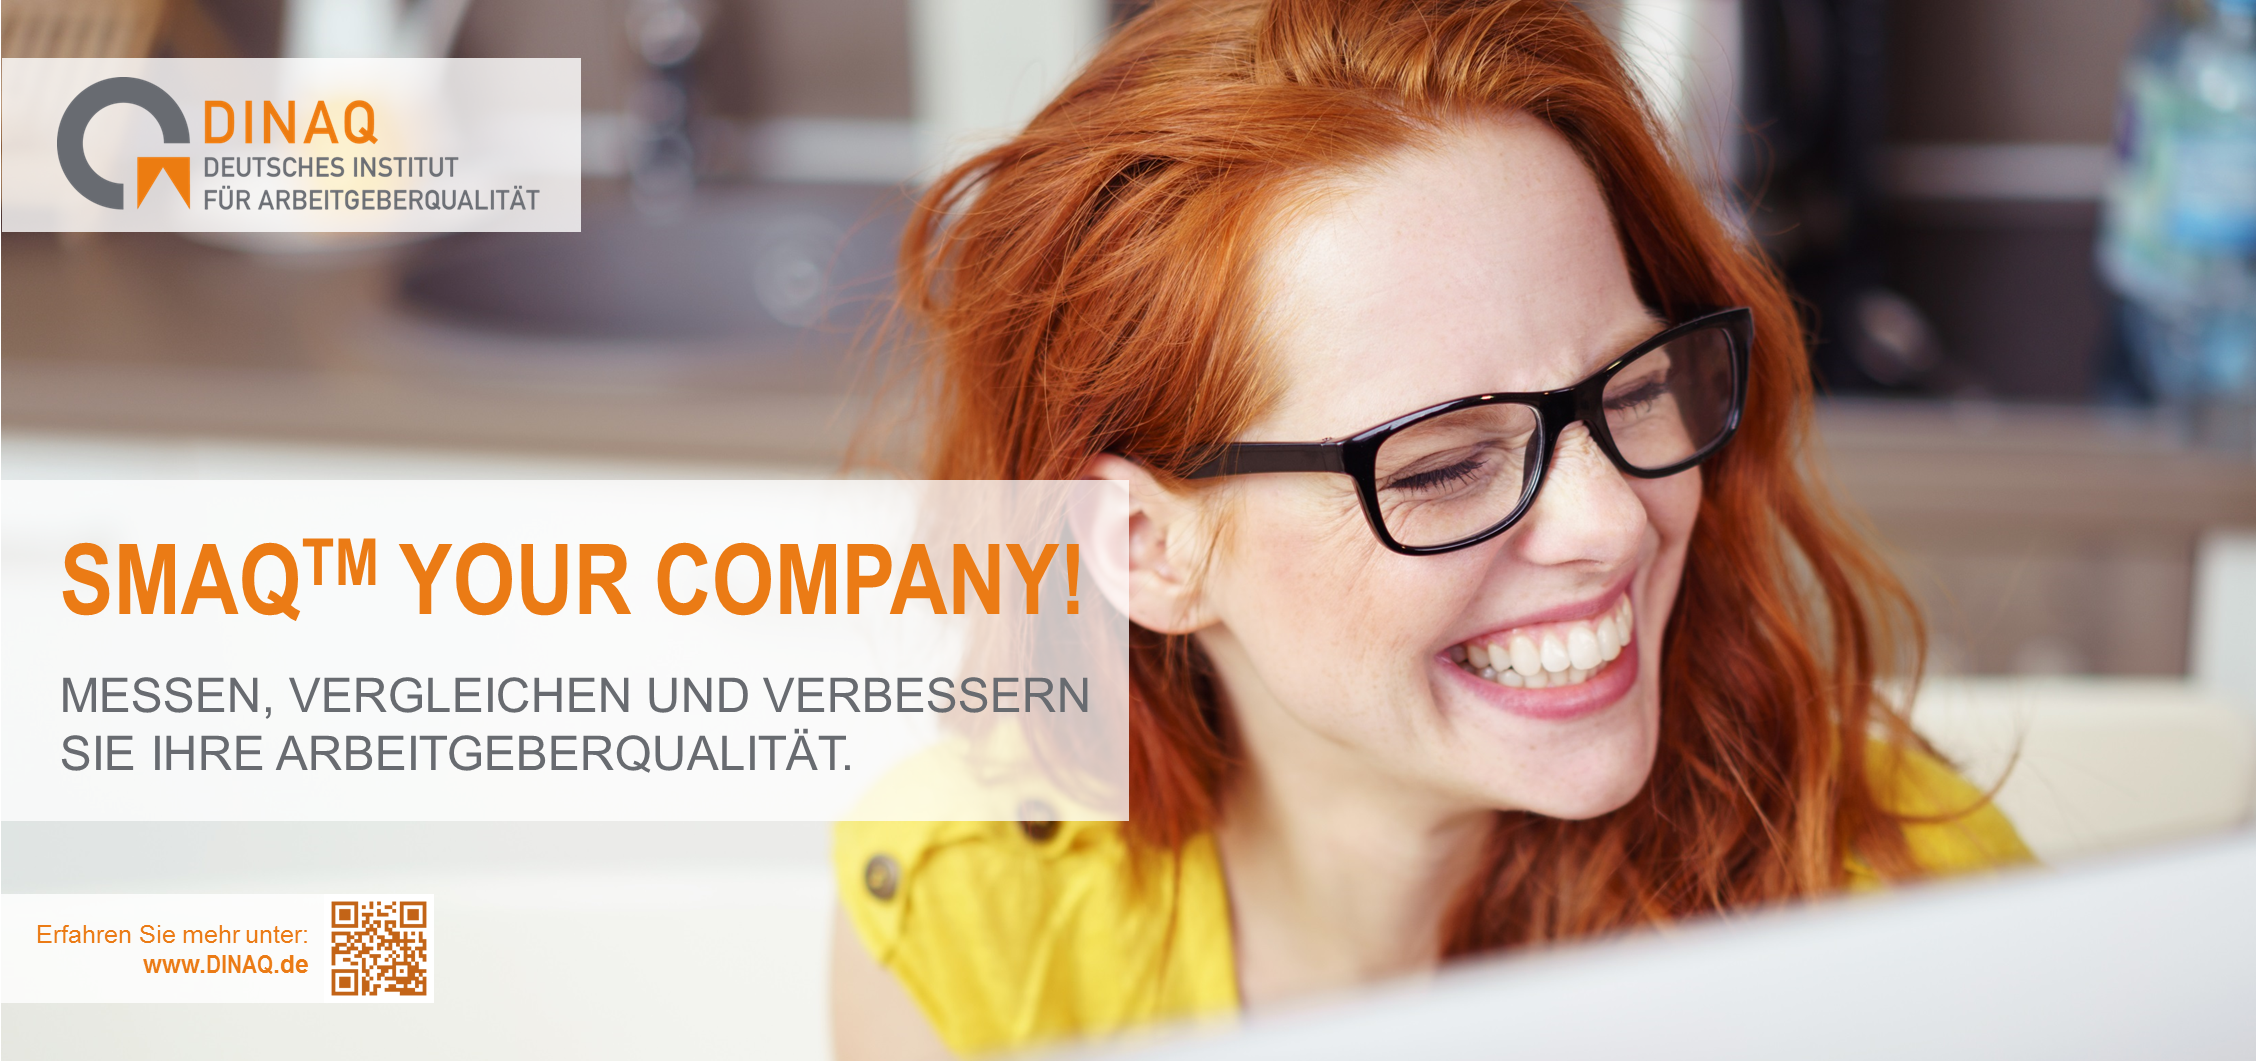 „SMAQ YOUR COMPANY!“ Ein innovativer Ansatz zur Verbesserung der Arbeitgeberqualität in Deutschland.